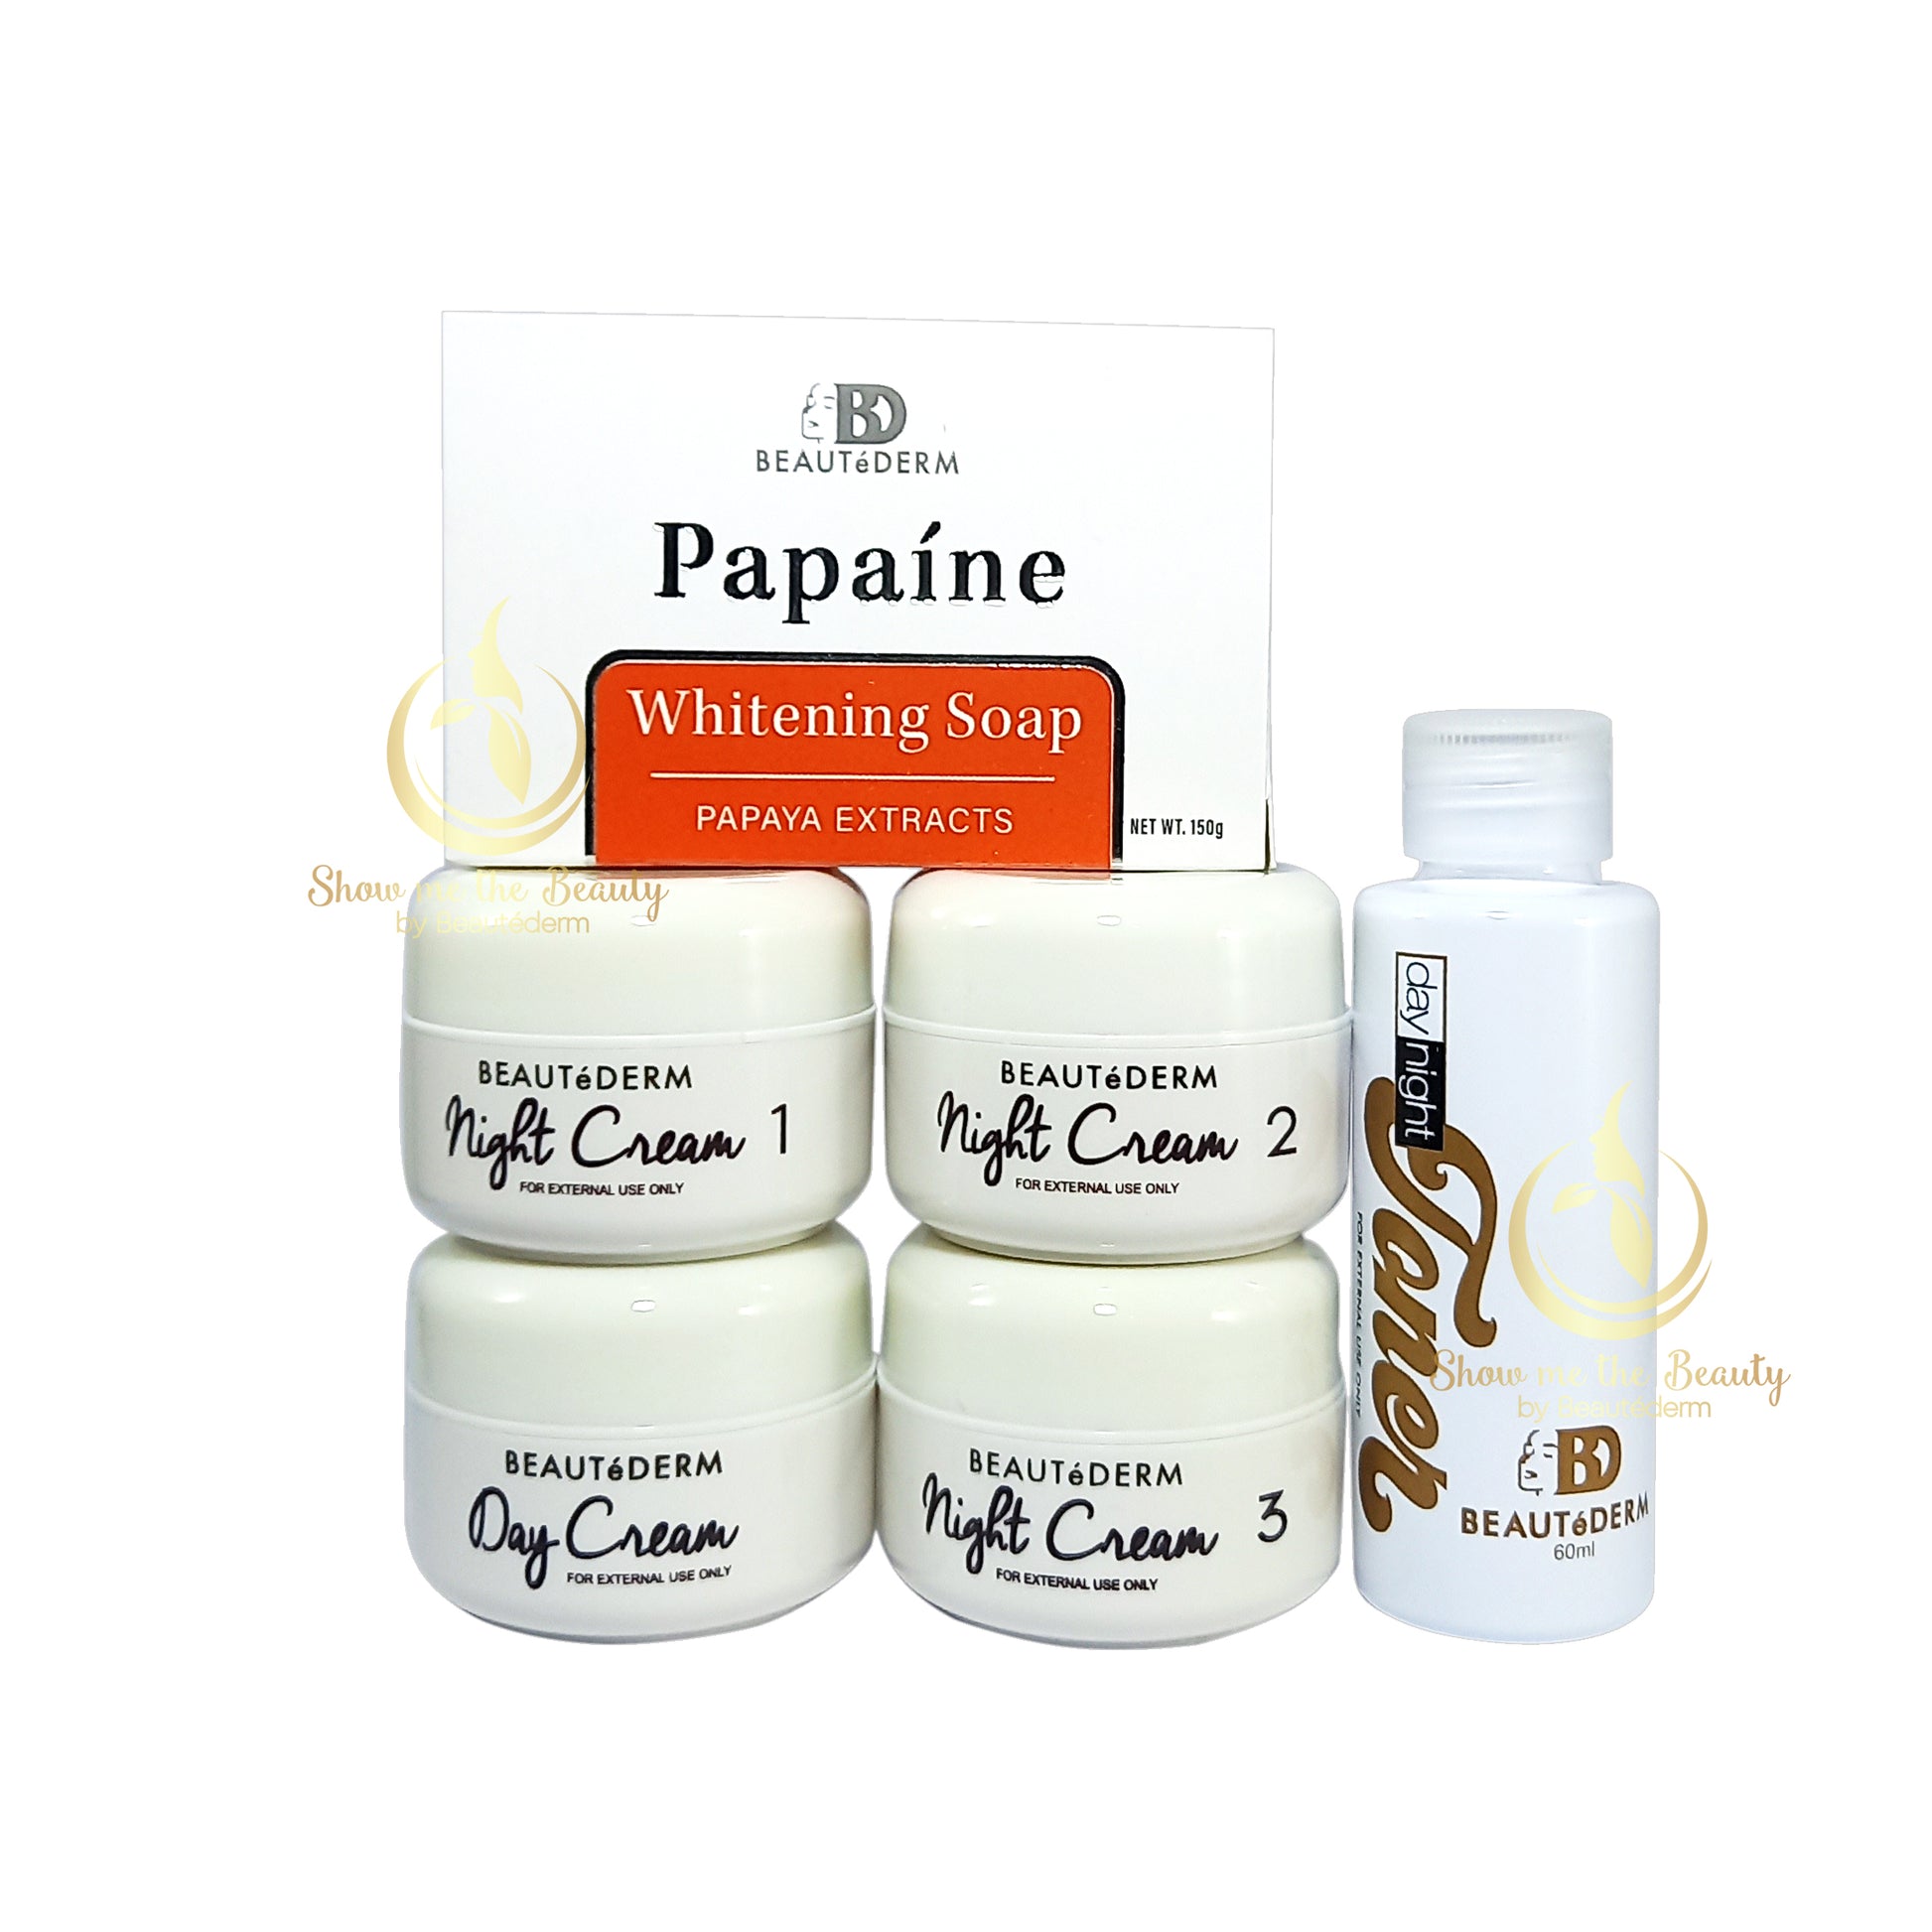 Beautederm Regular Set New Papaine Packaging